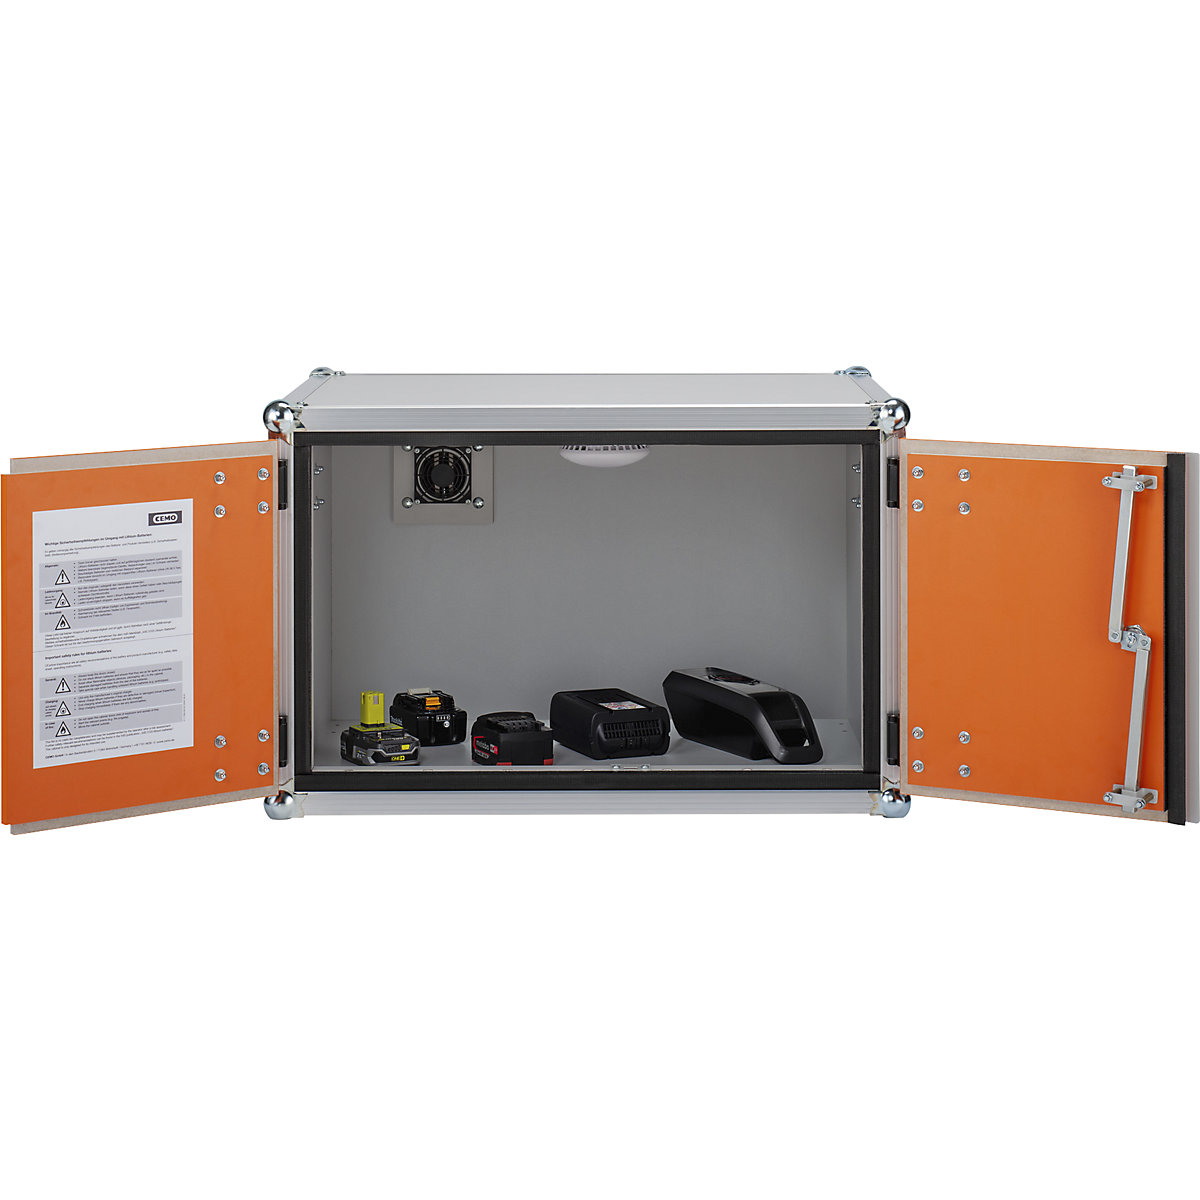 Bezpieczna szafa do przechowywania akumulatorów – CEMO (Zdjęcie produktu 5)-4